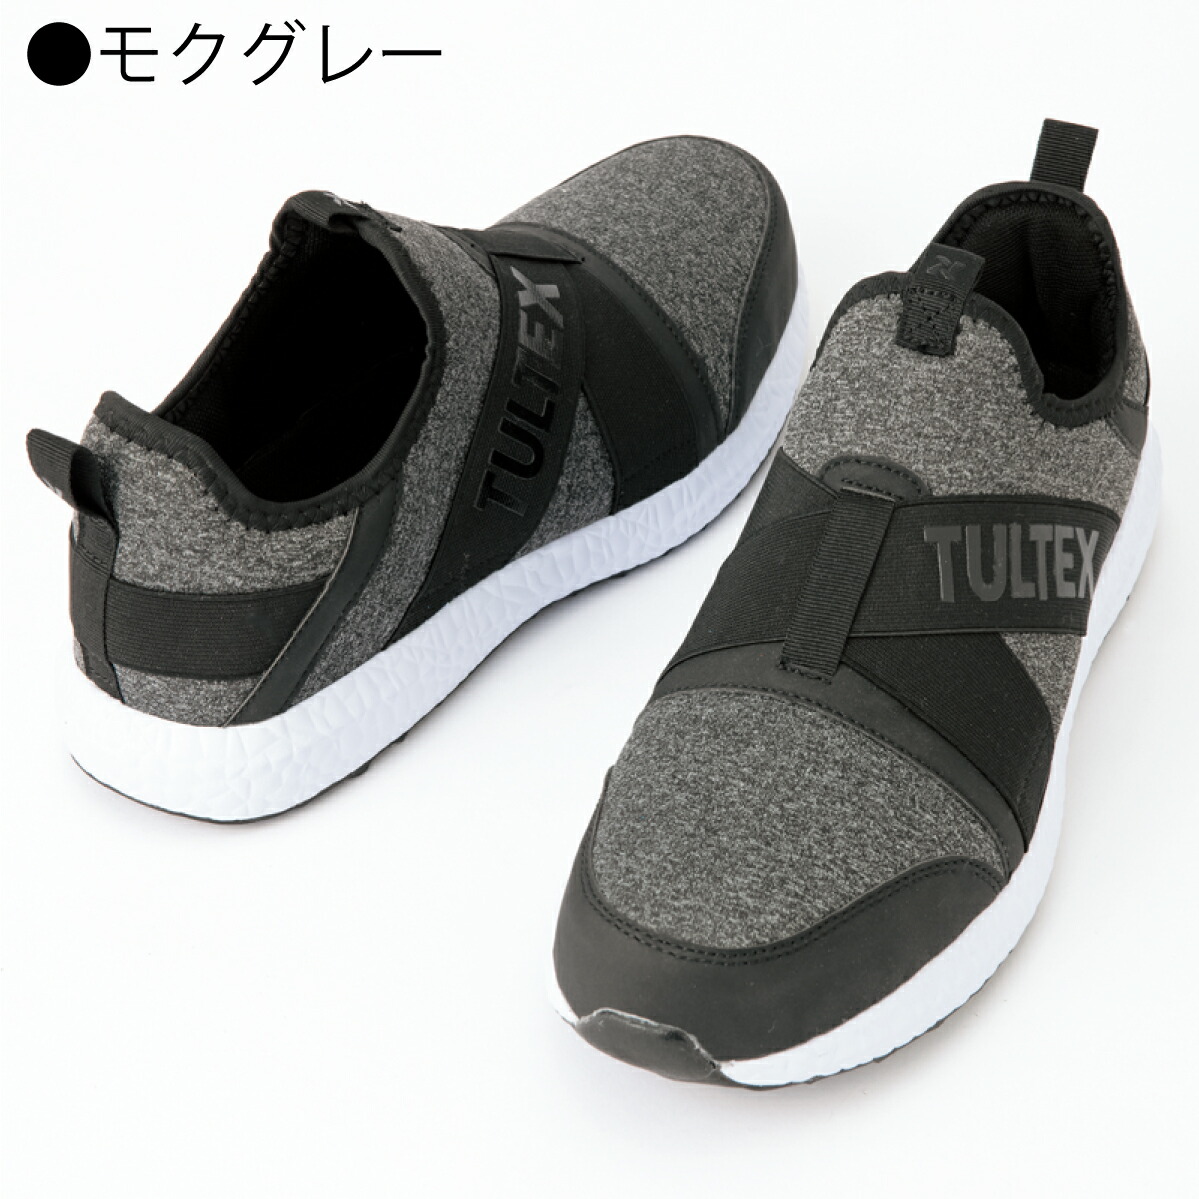 作業靴 安全靴 スリッポン 軽量 メッシュ 通気 樹脂先芯 アイトス TULTEX LX69180